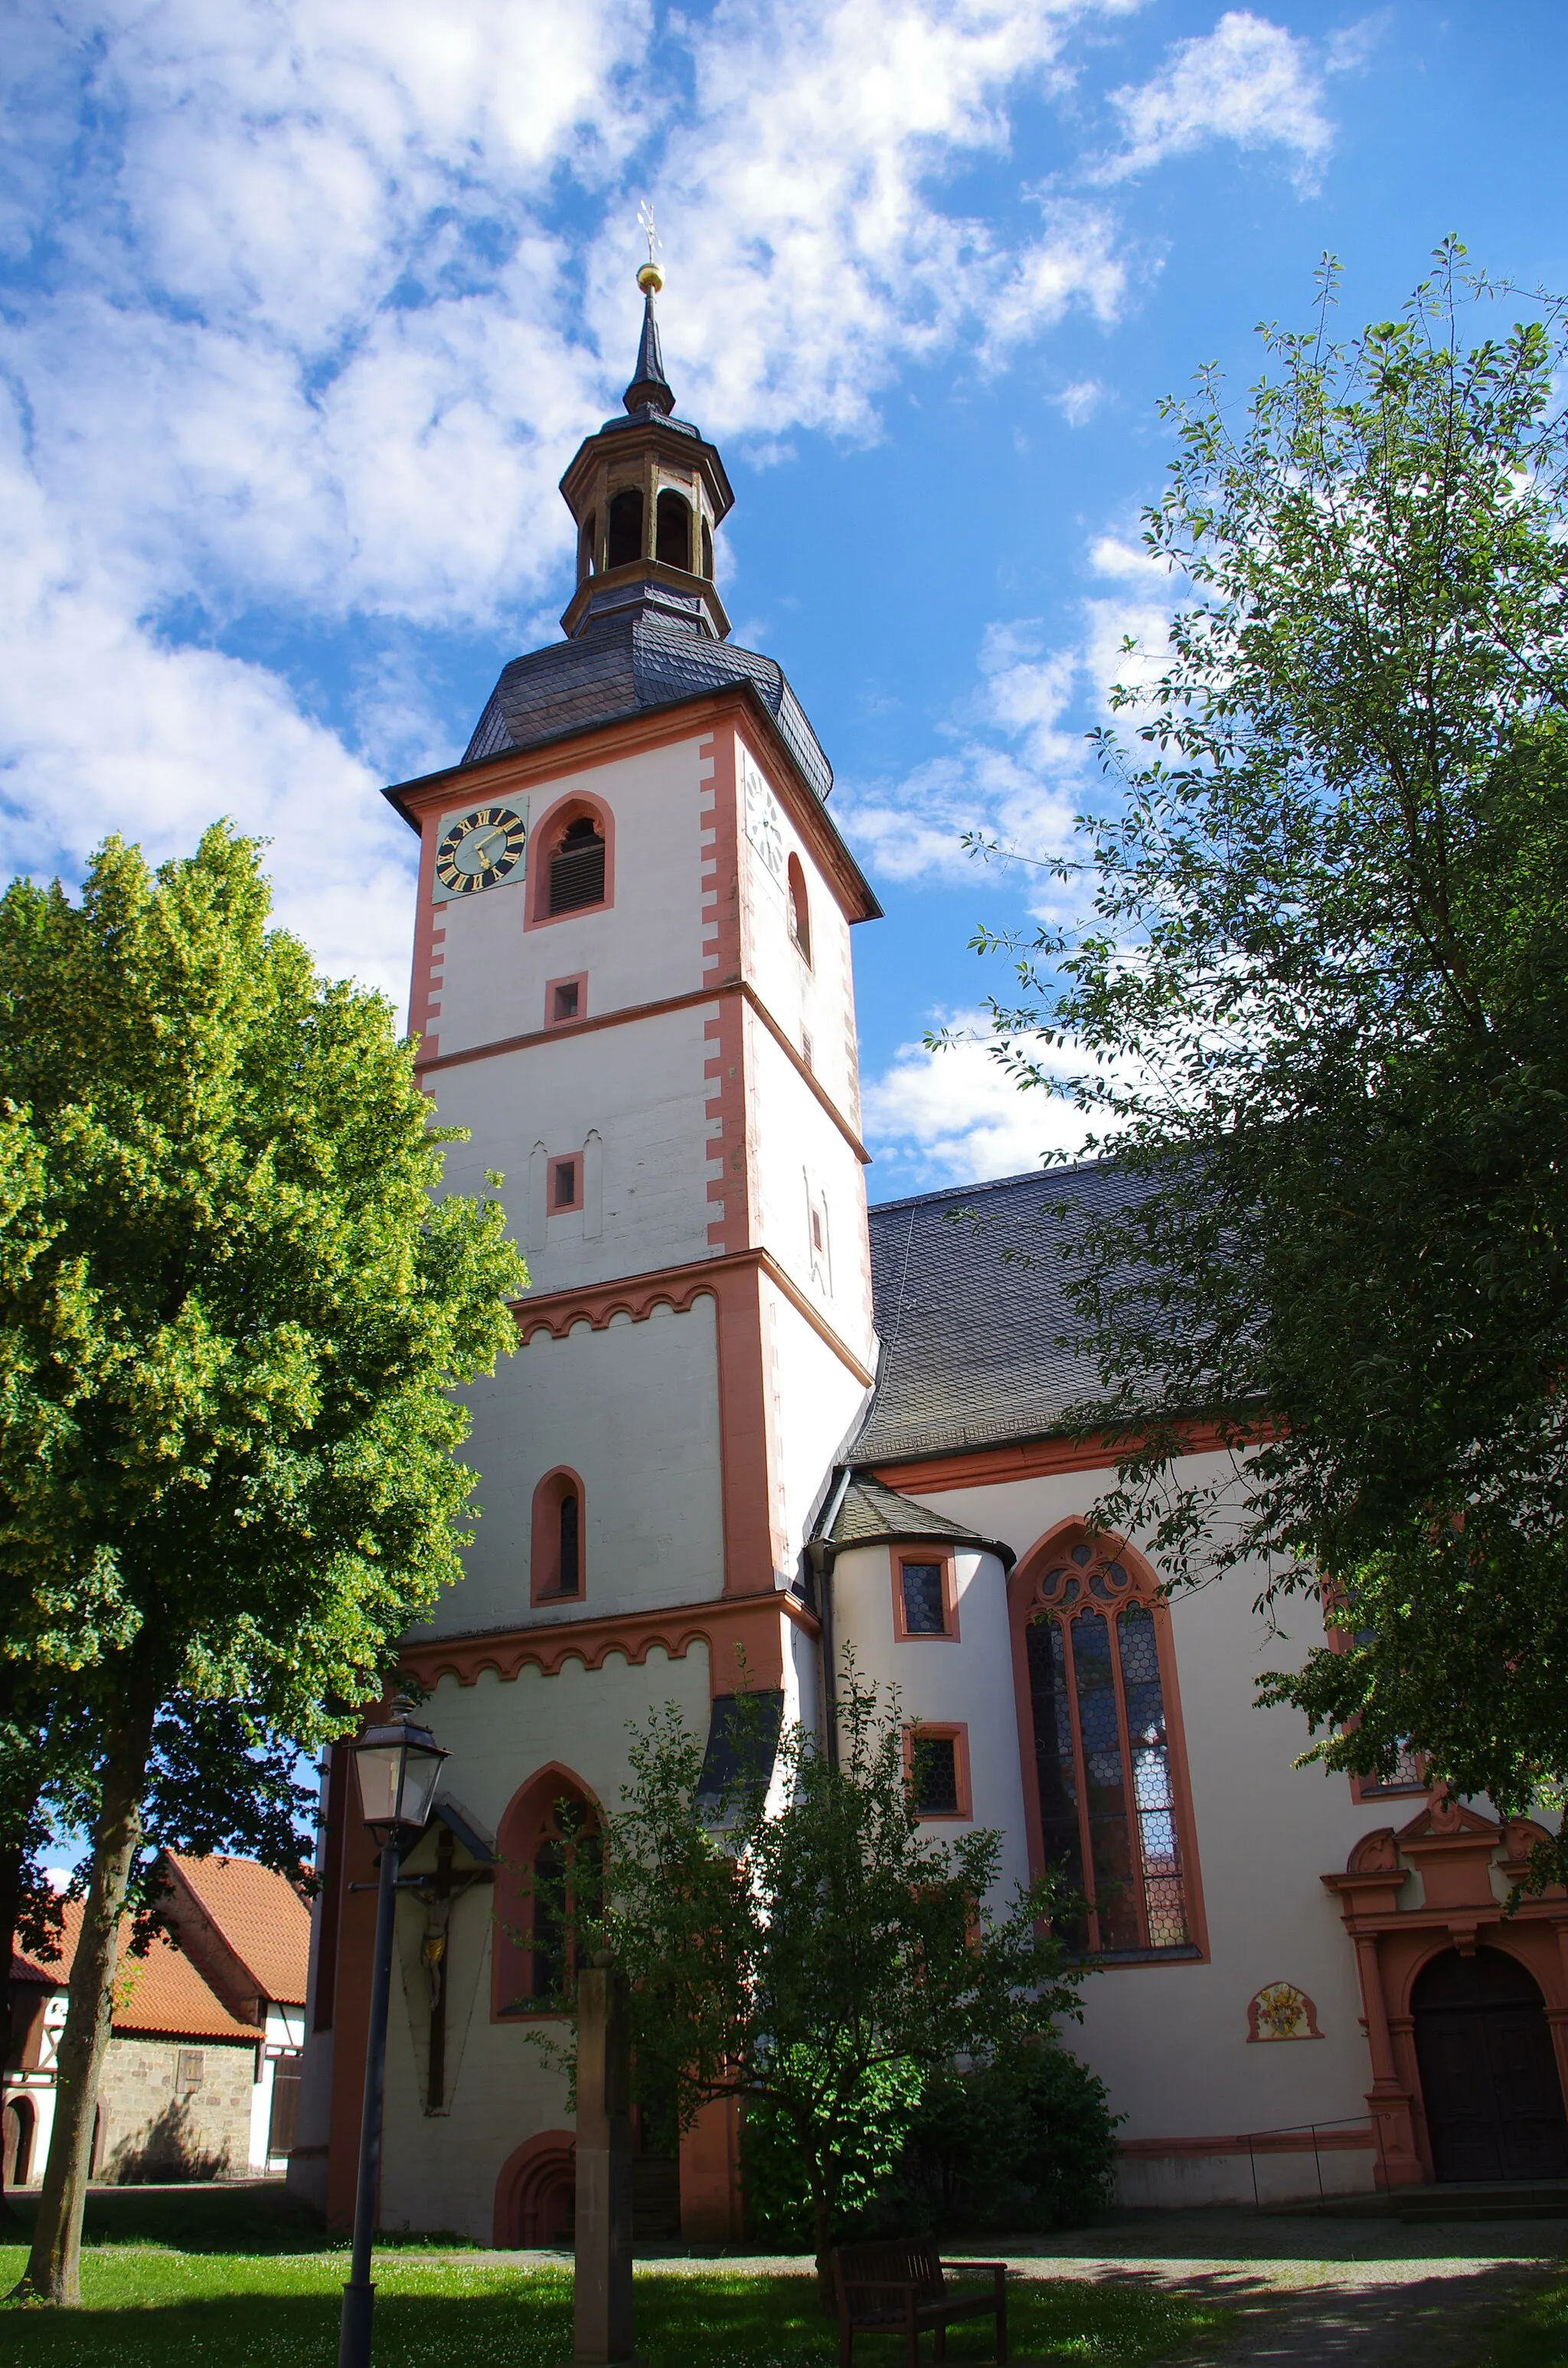 Image of Geldersheim